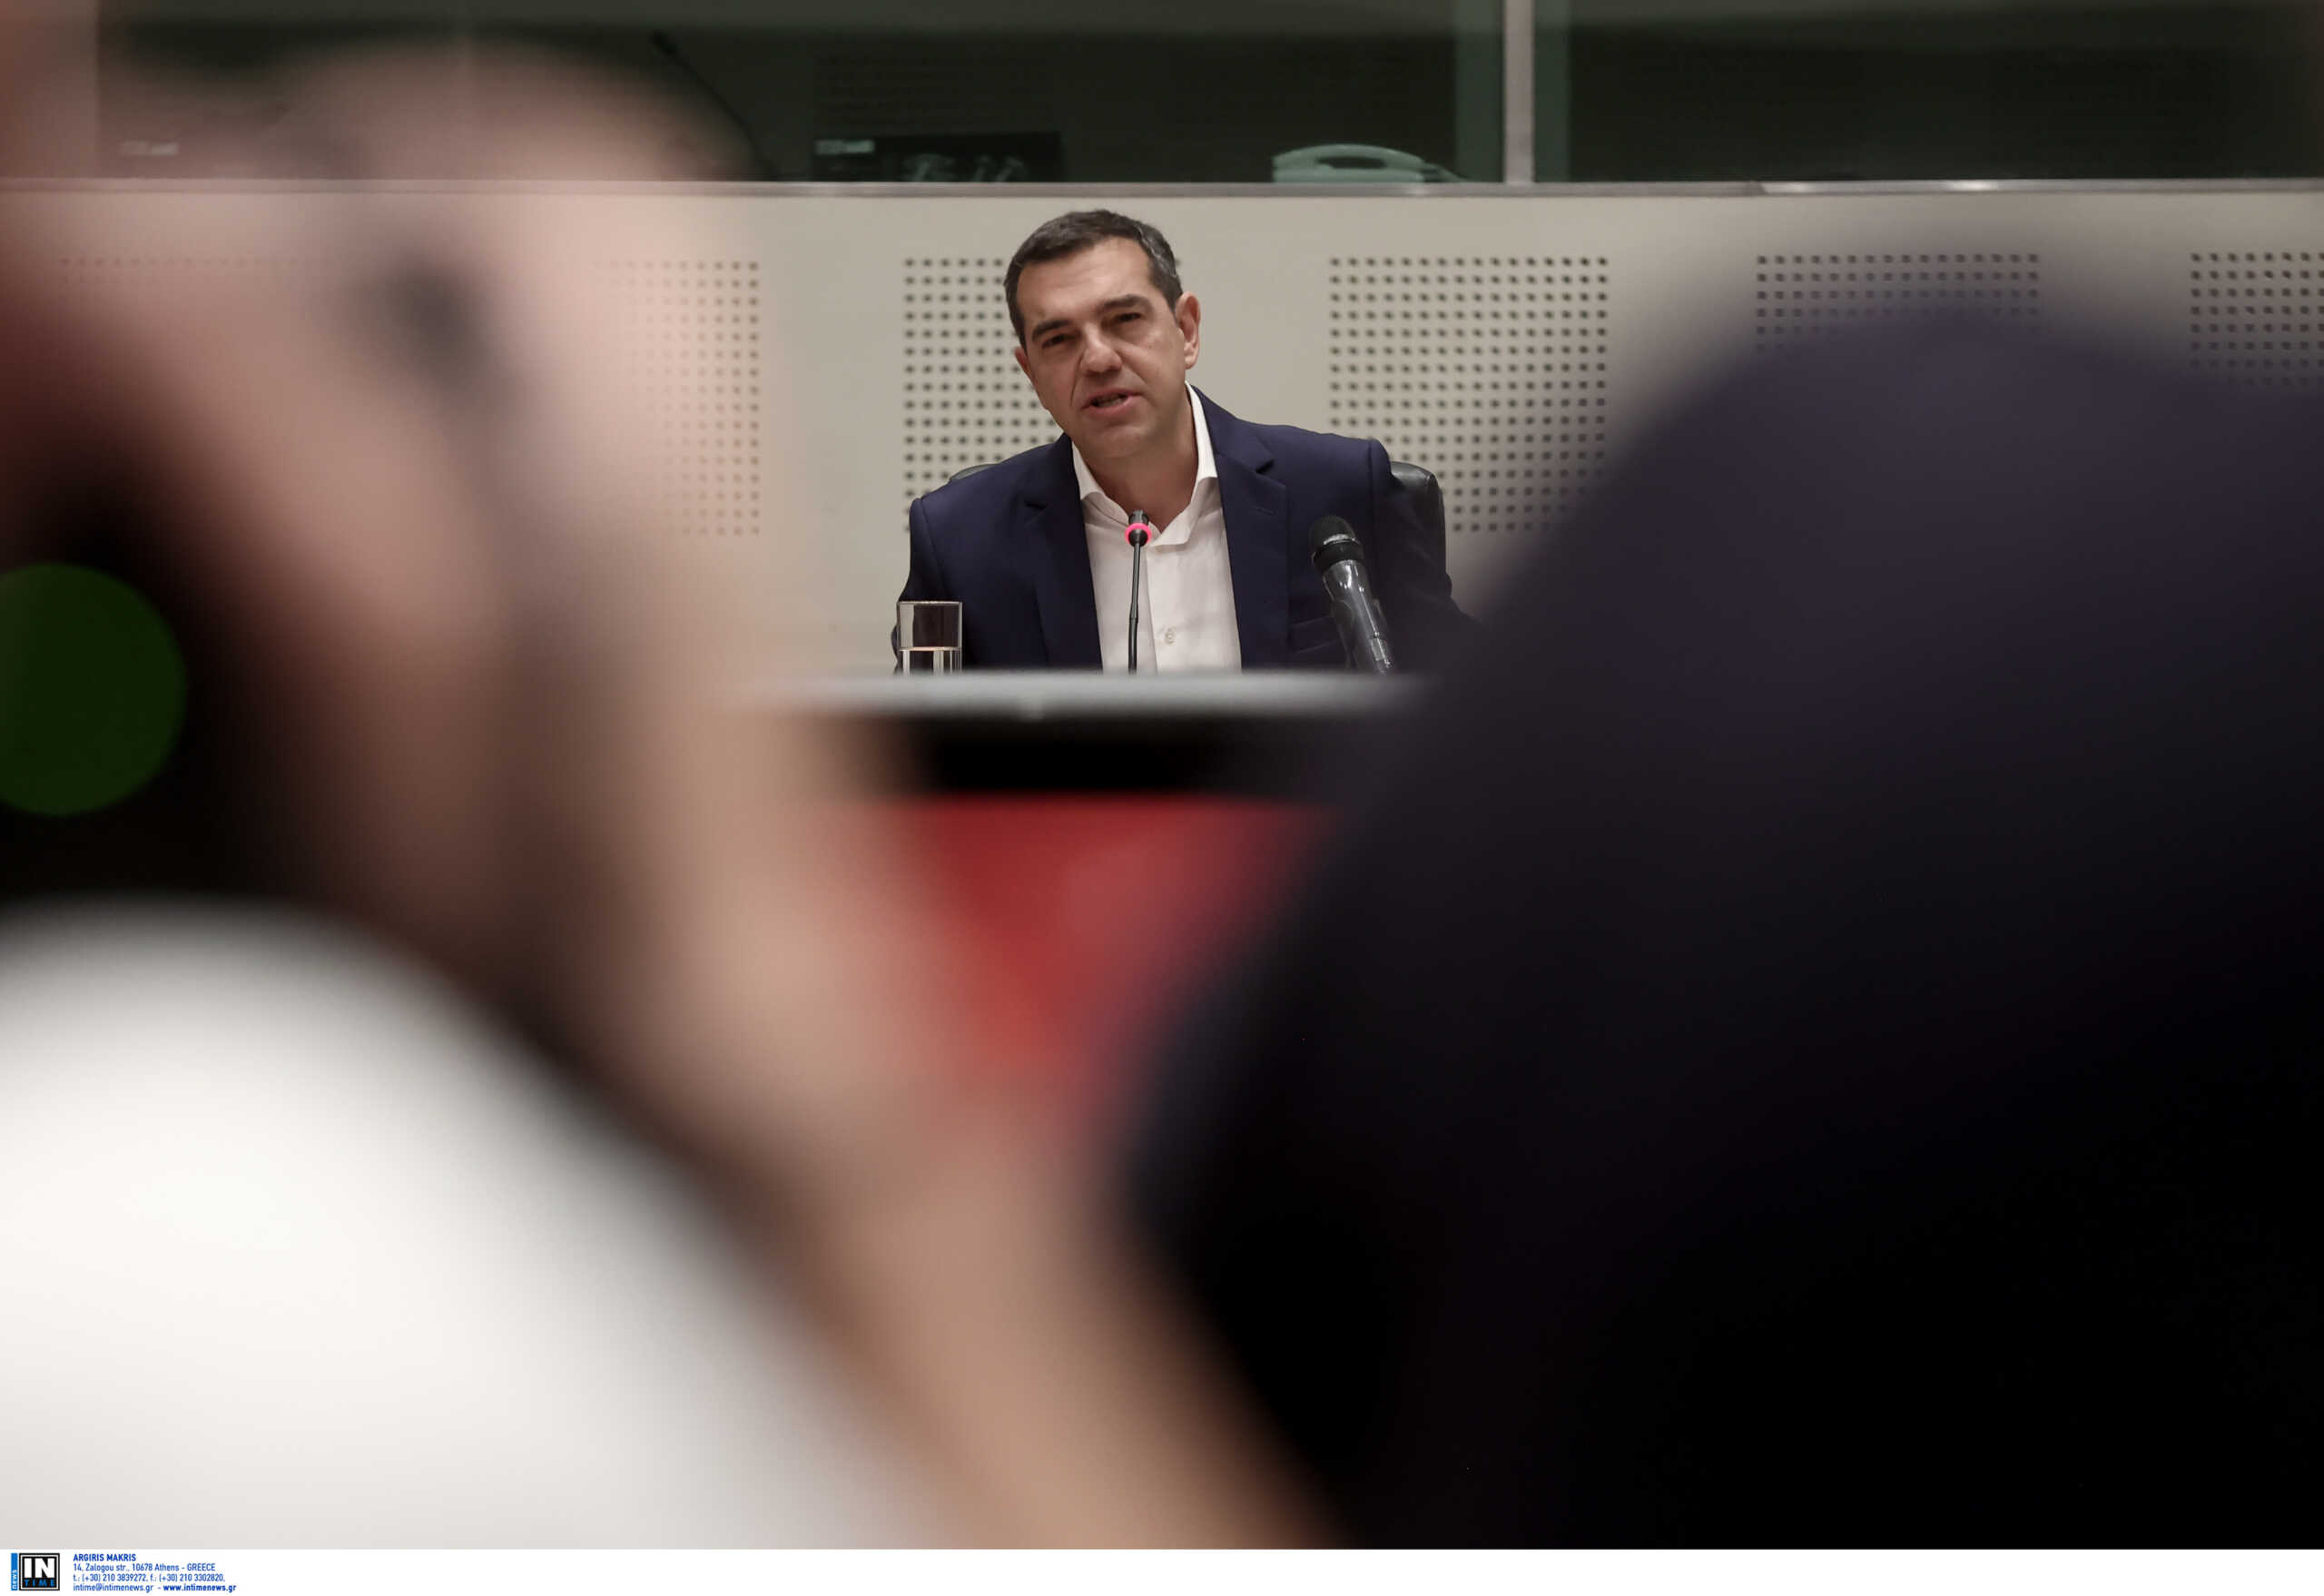 ΣΥΡΙΖΑ: Γιατί «παραμέρισε» ο Αλέξης Τσίπρας – Οι υποψήφιοι διάδοχοι και οι fast track διαδικασίες για να μην μείνει ακέφαλο το κόμμα